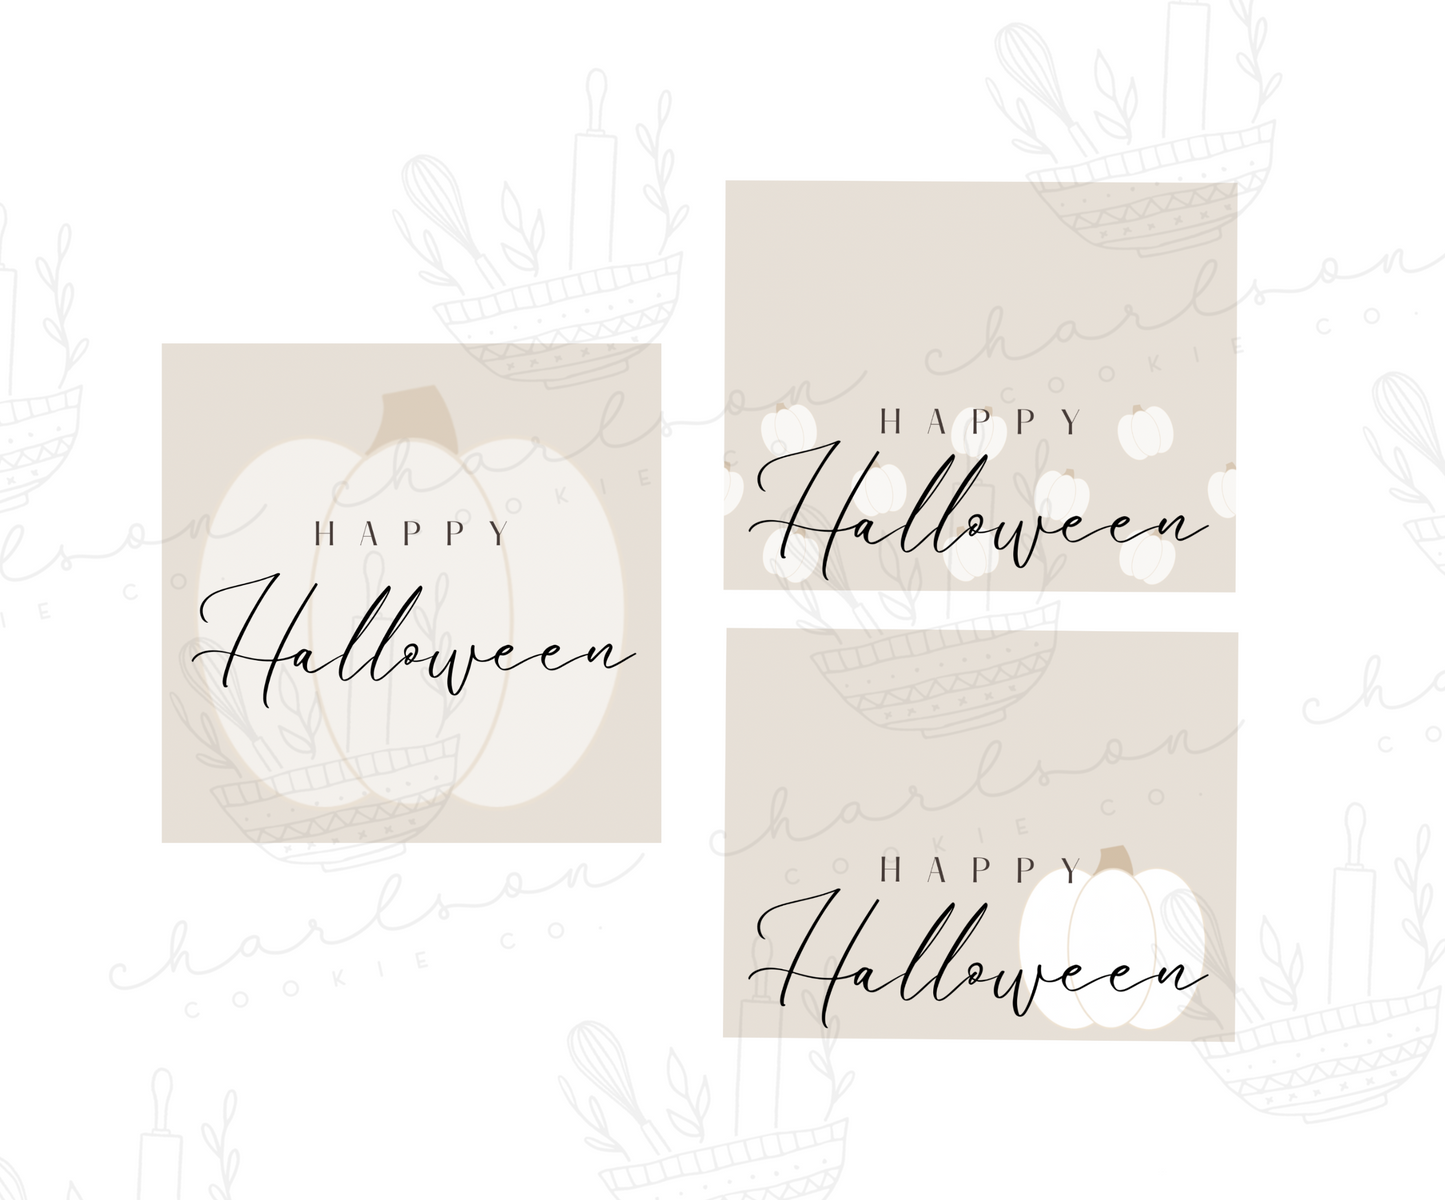 Happy Halloween tan templates / Instant digital download